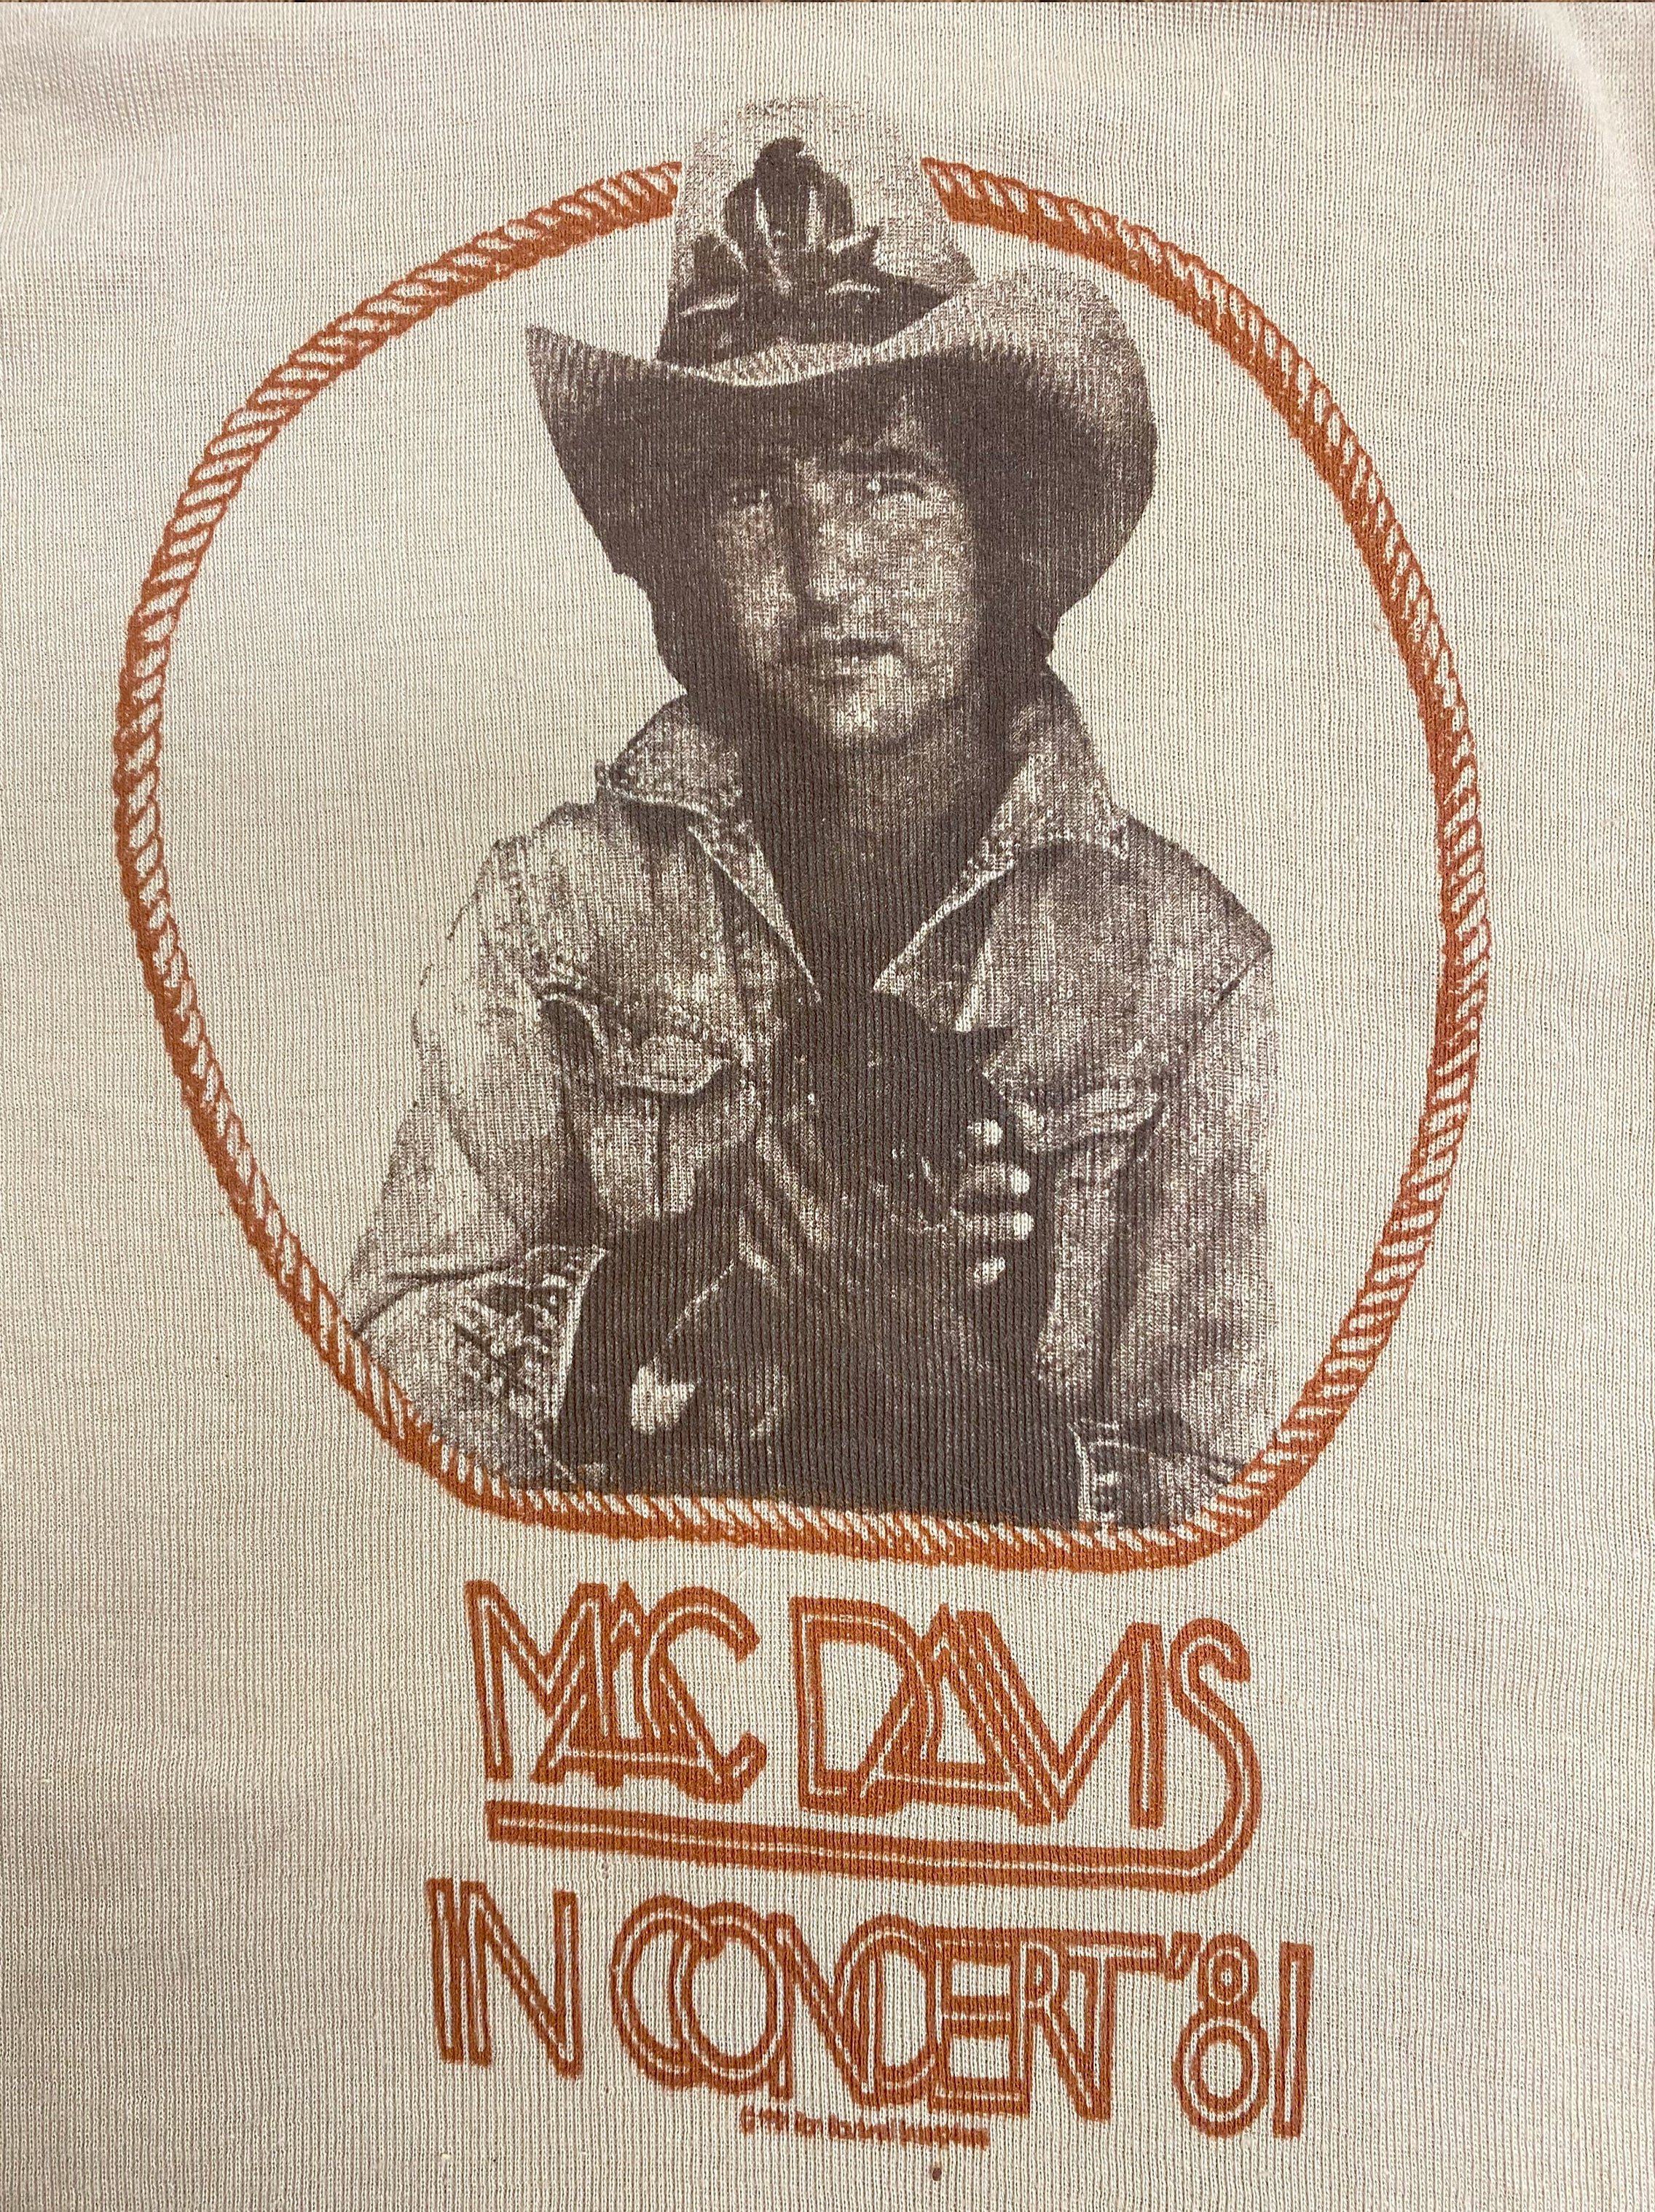 Mac Davis in Concert '81 Vintage Tee